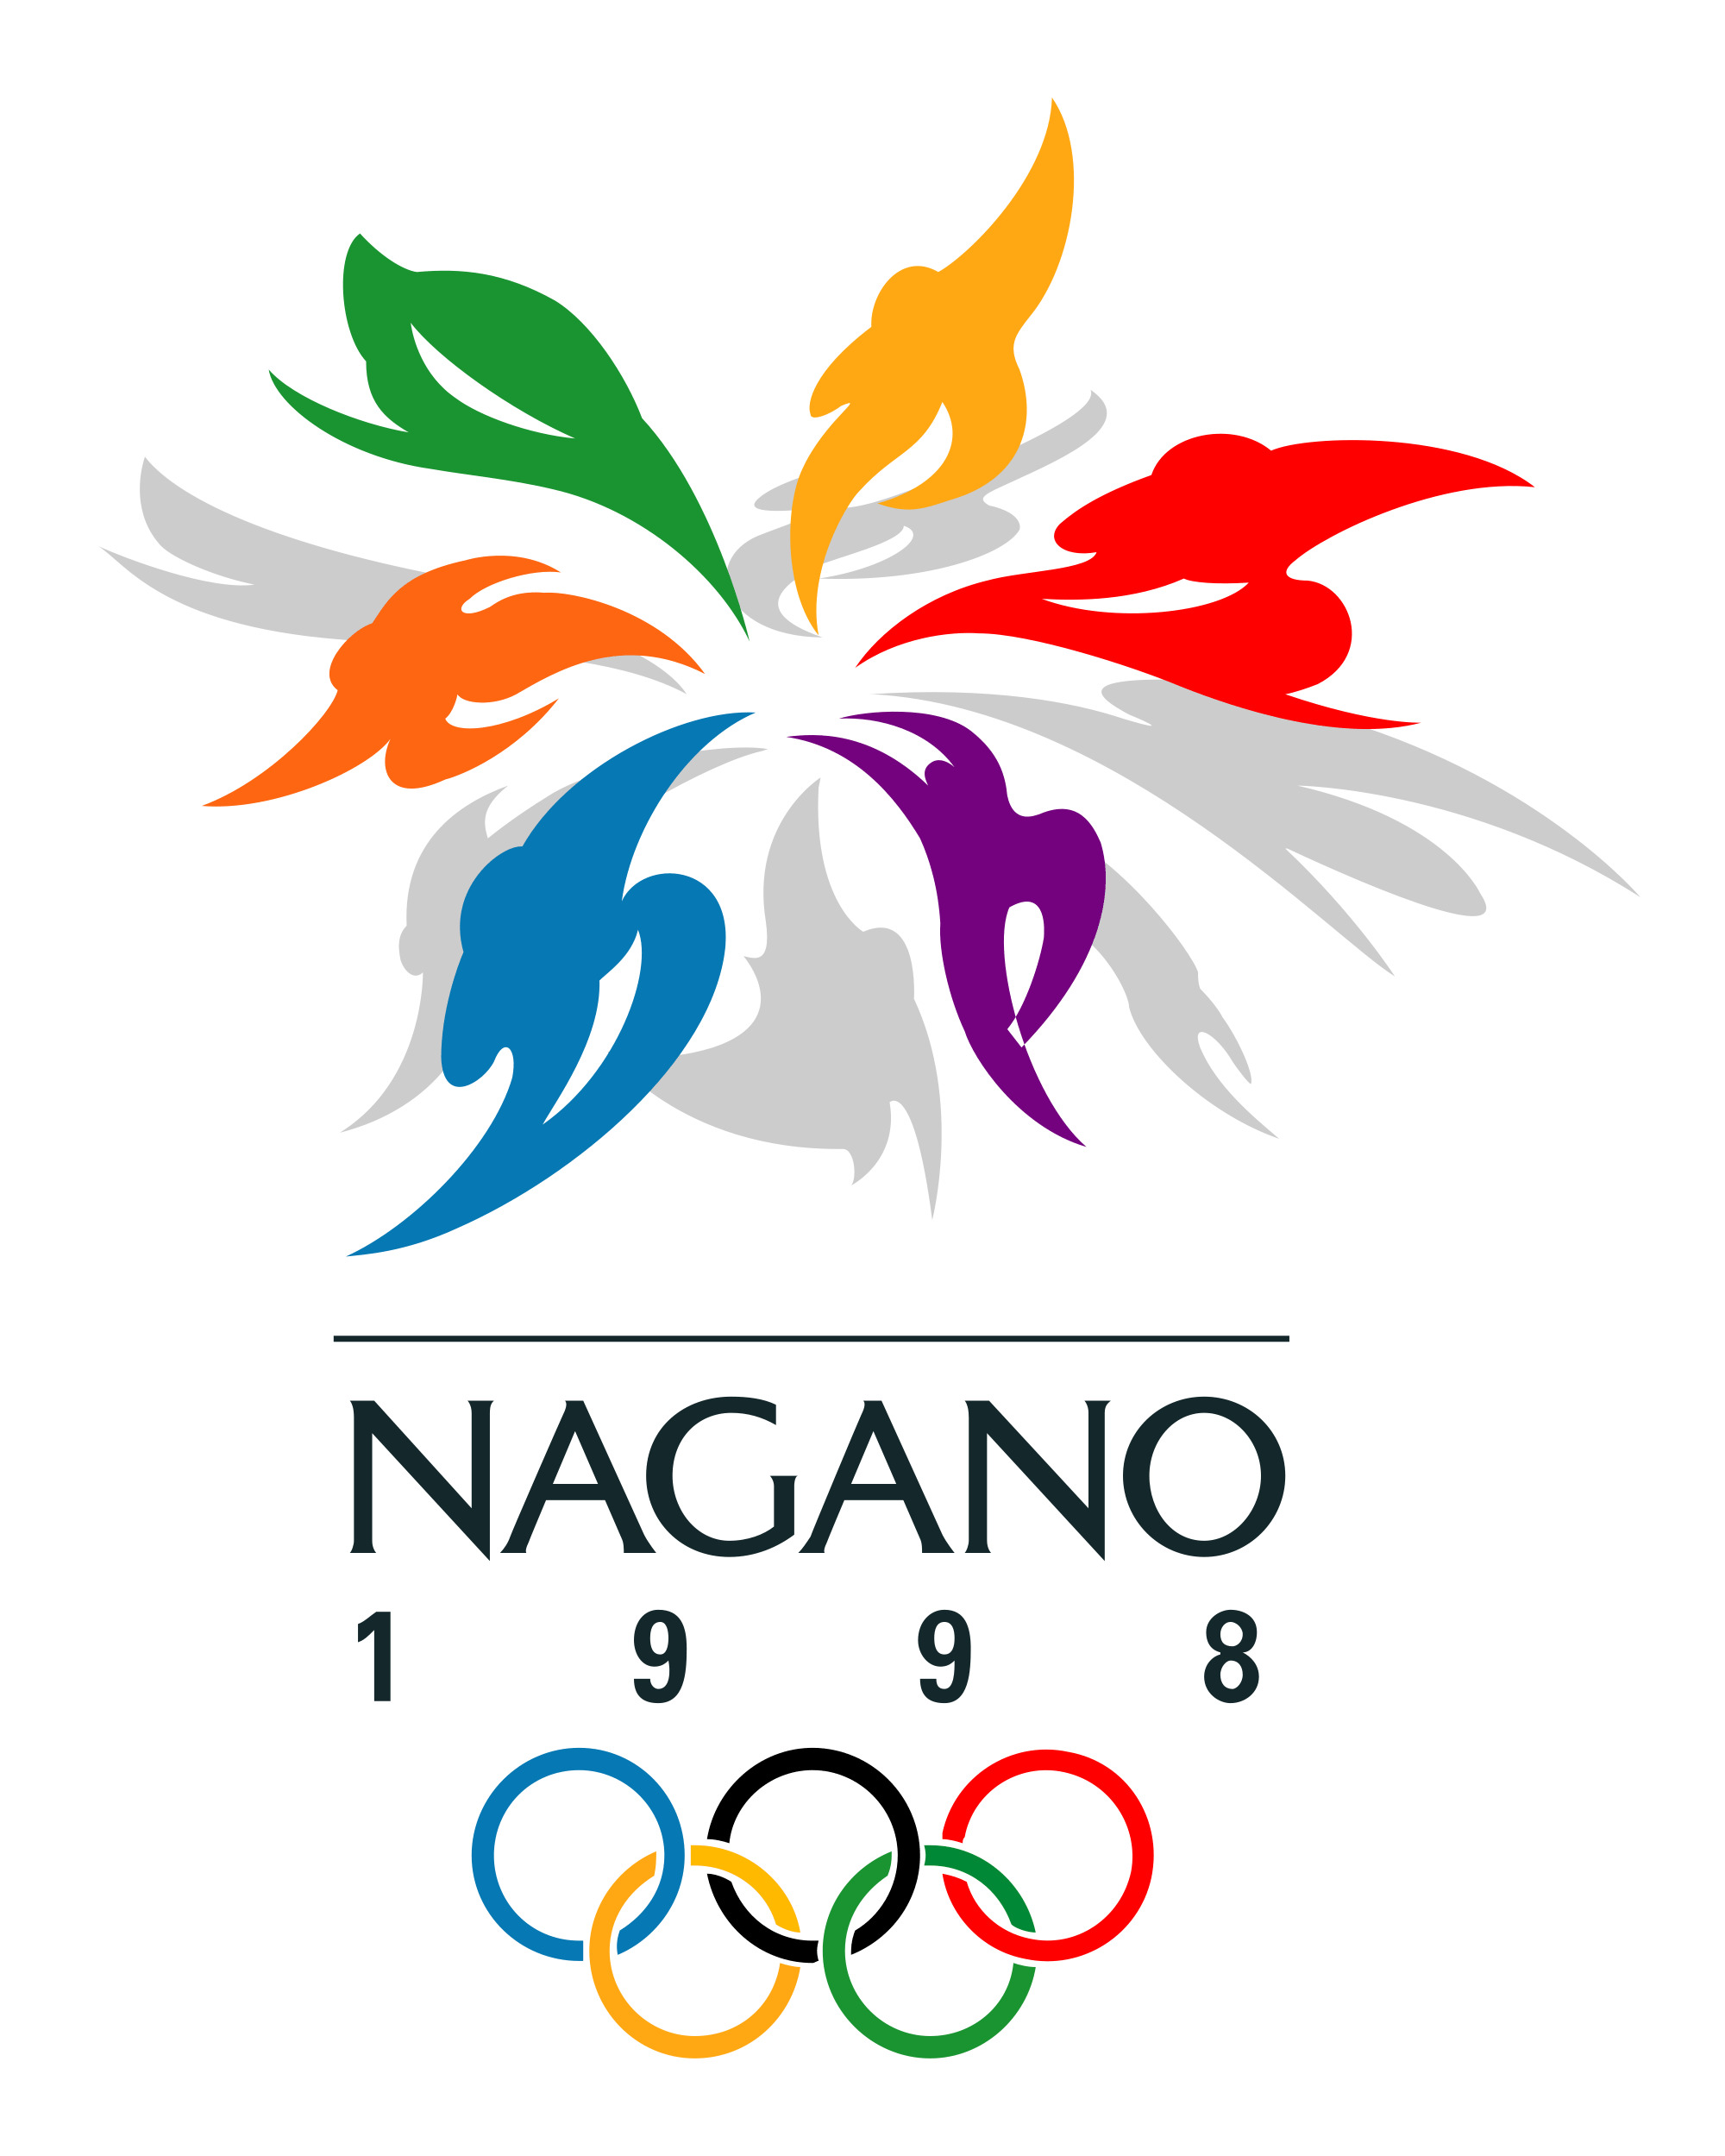 Olympics Nagano 1998 png icons